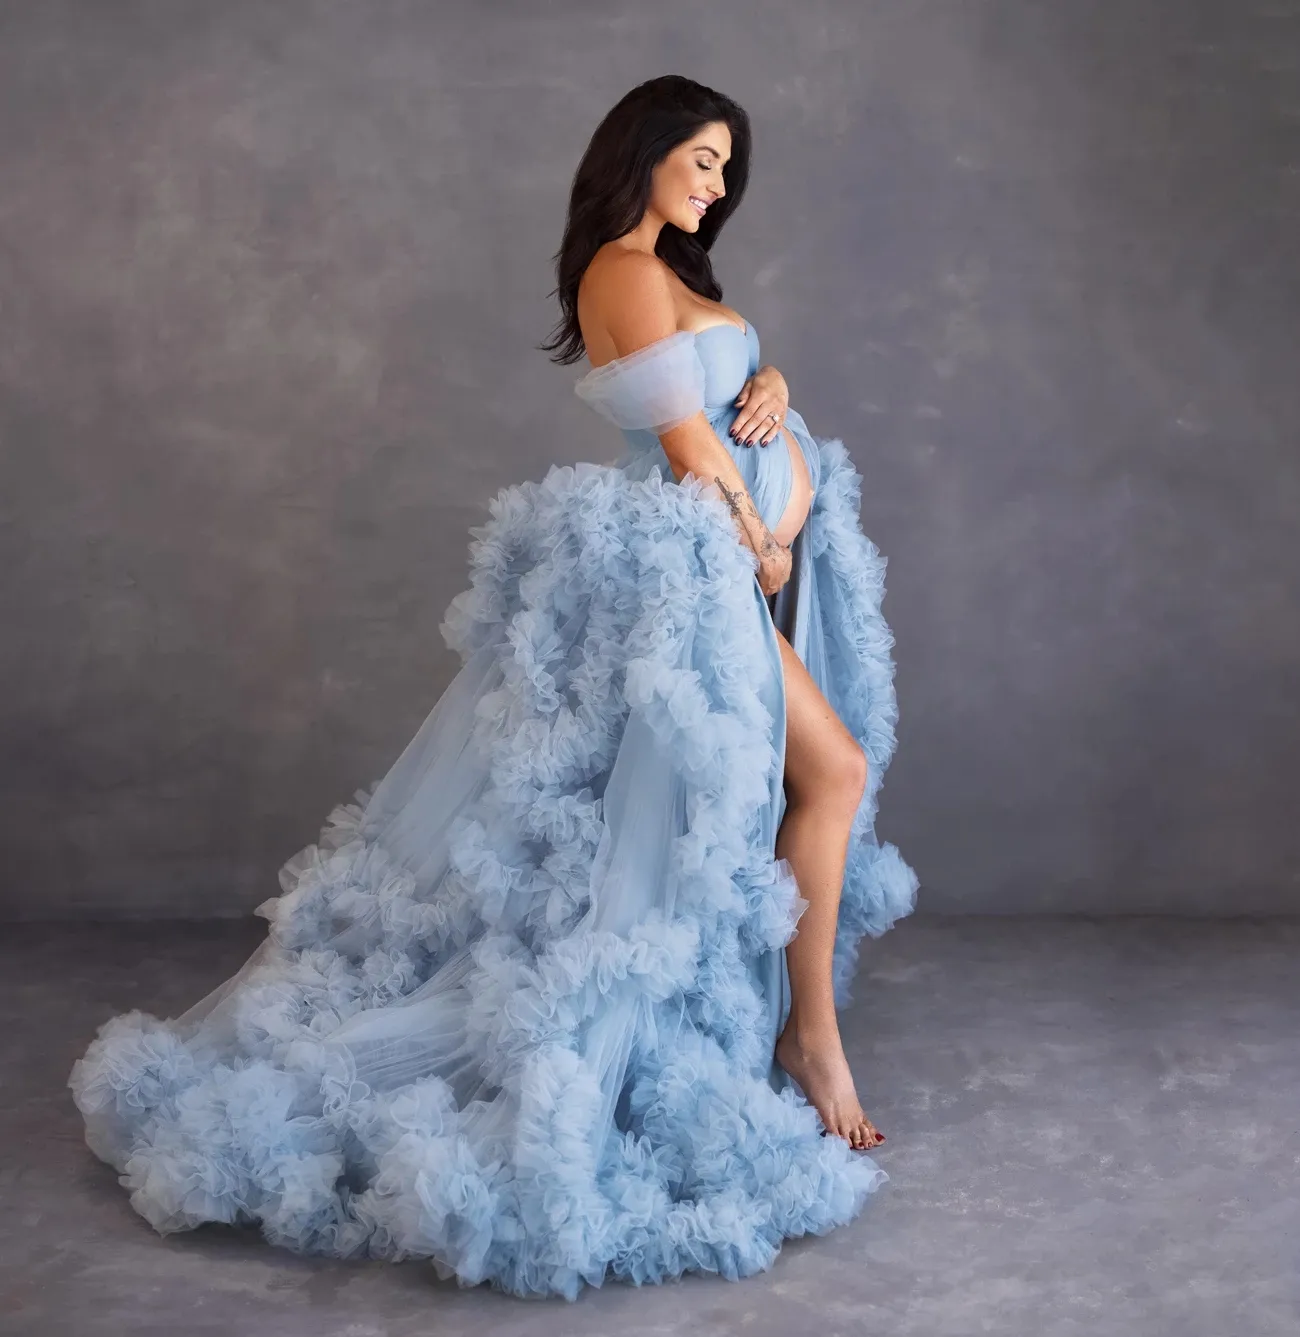 المتربة الأزرق تكدرت تول فساتين السهرة الأمومة ثوب قبالة الكتف رقيق طويل الحمل photoshoot اللباس إضافي من منتفخ التصوير الفساتين